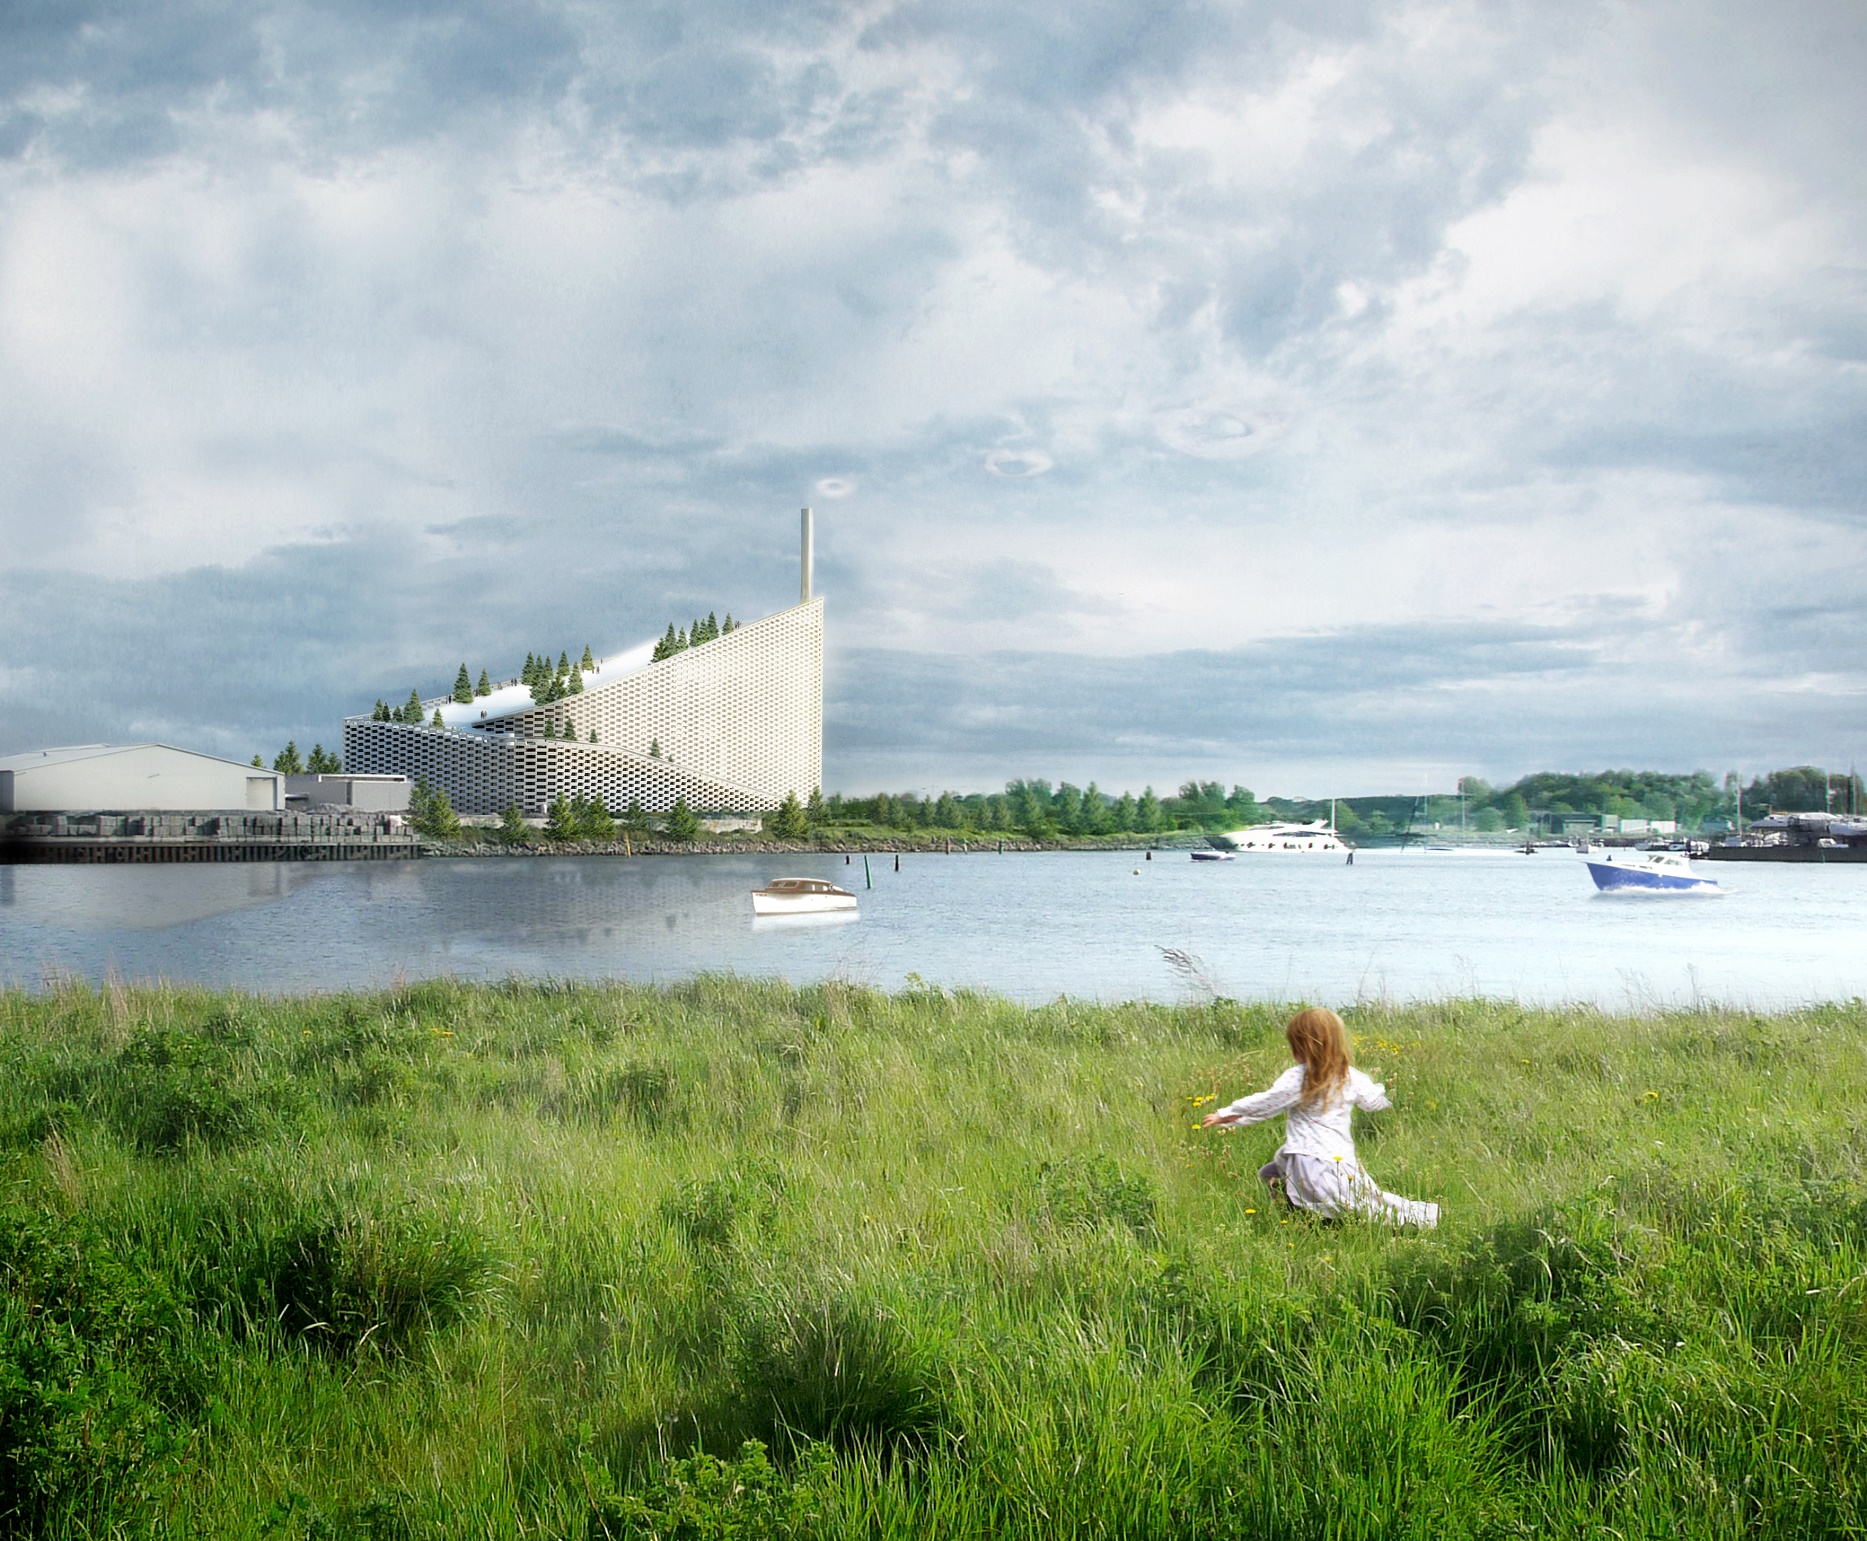 Em Copenhagen está sendo construído um incinerador para produção de energia capaz de aquecer até 120 mil famílias. O megaprojeto, em forma de montanha, inclui uma área de lazer com pistas de esqui